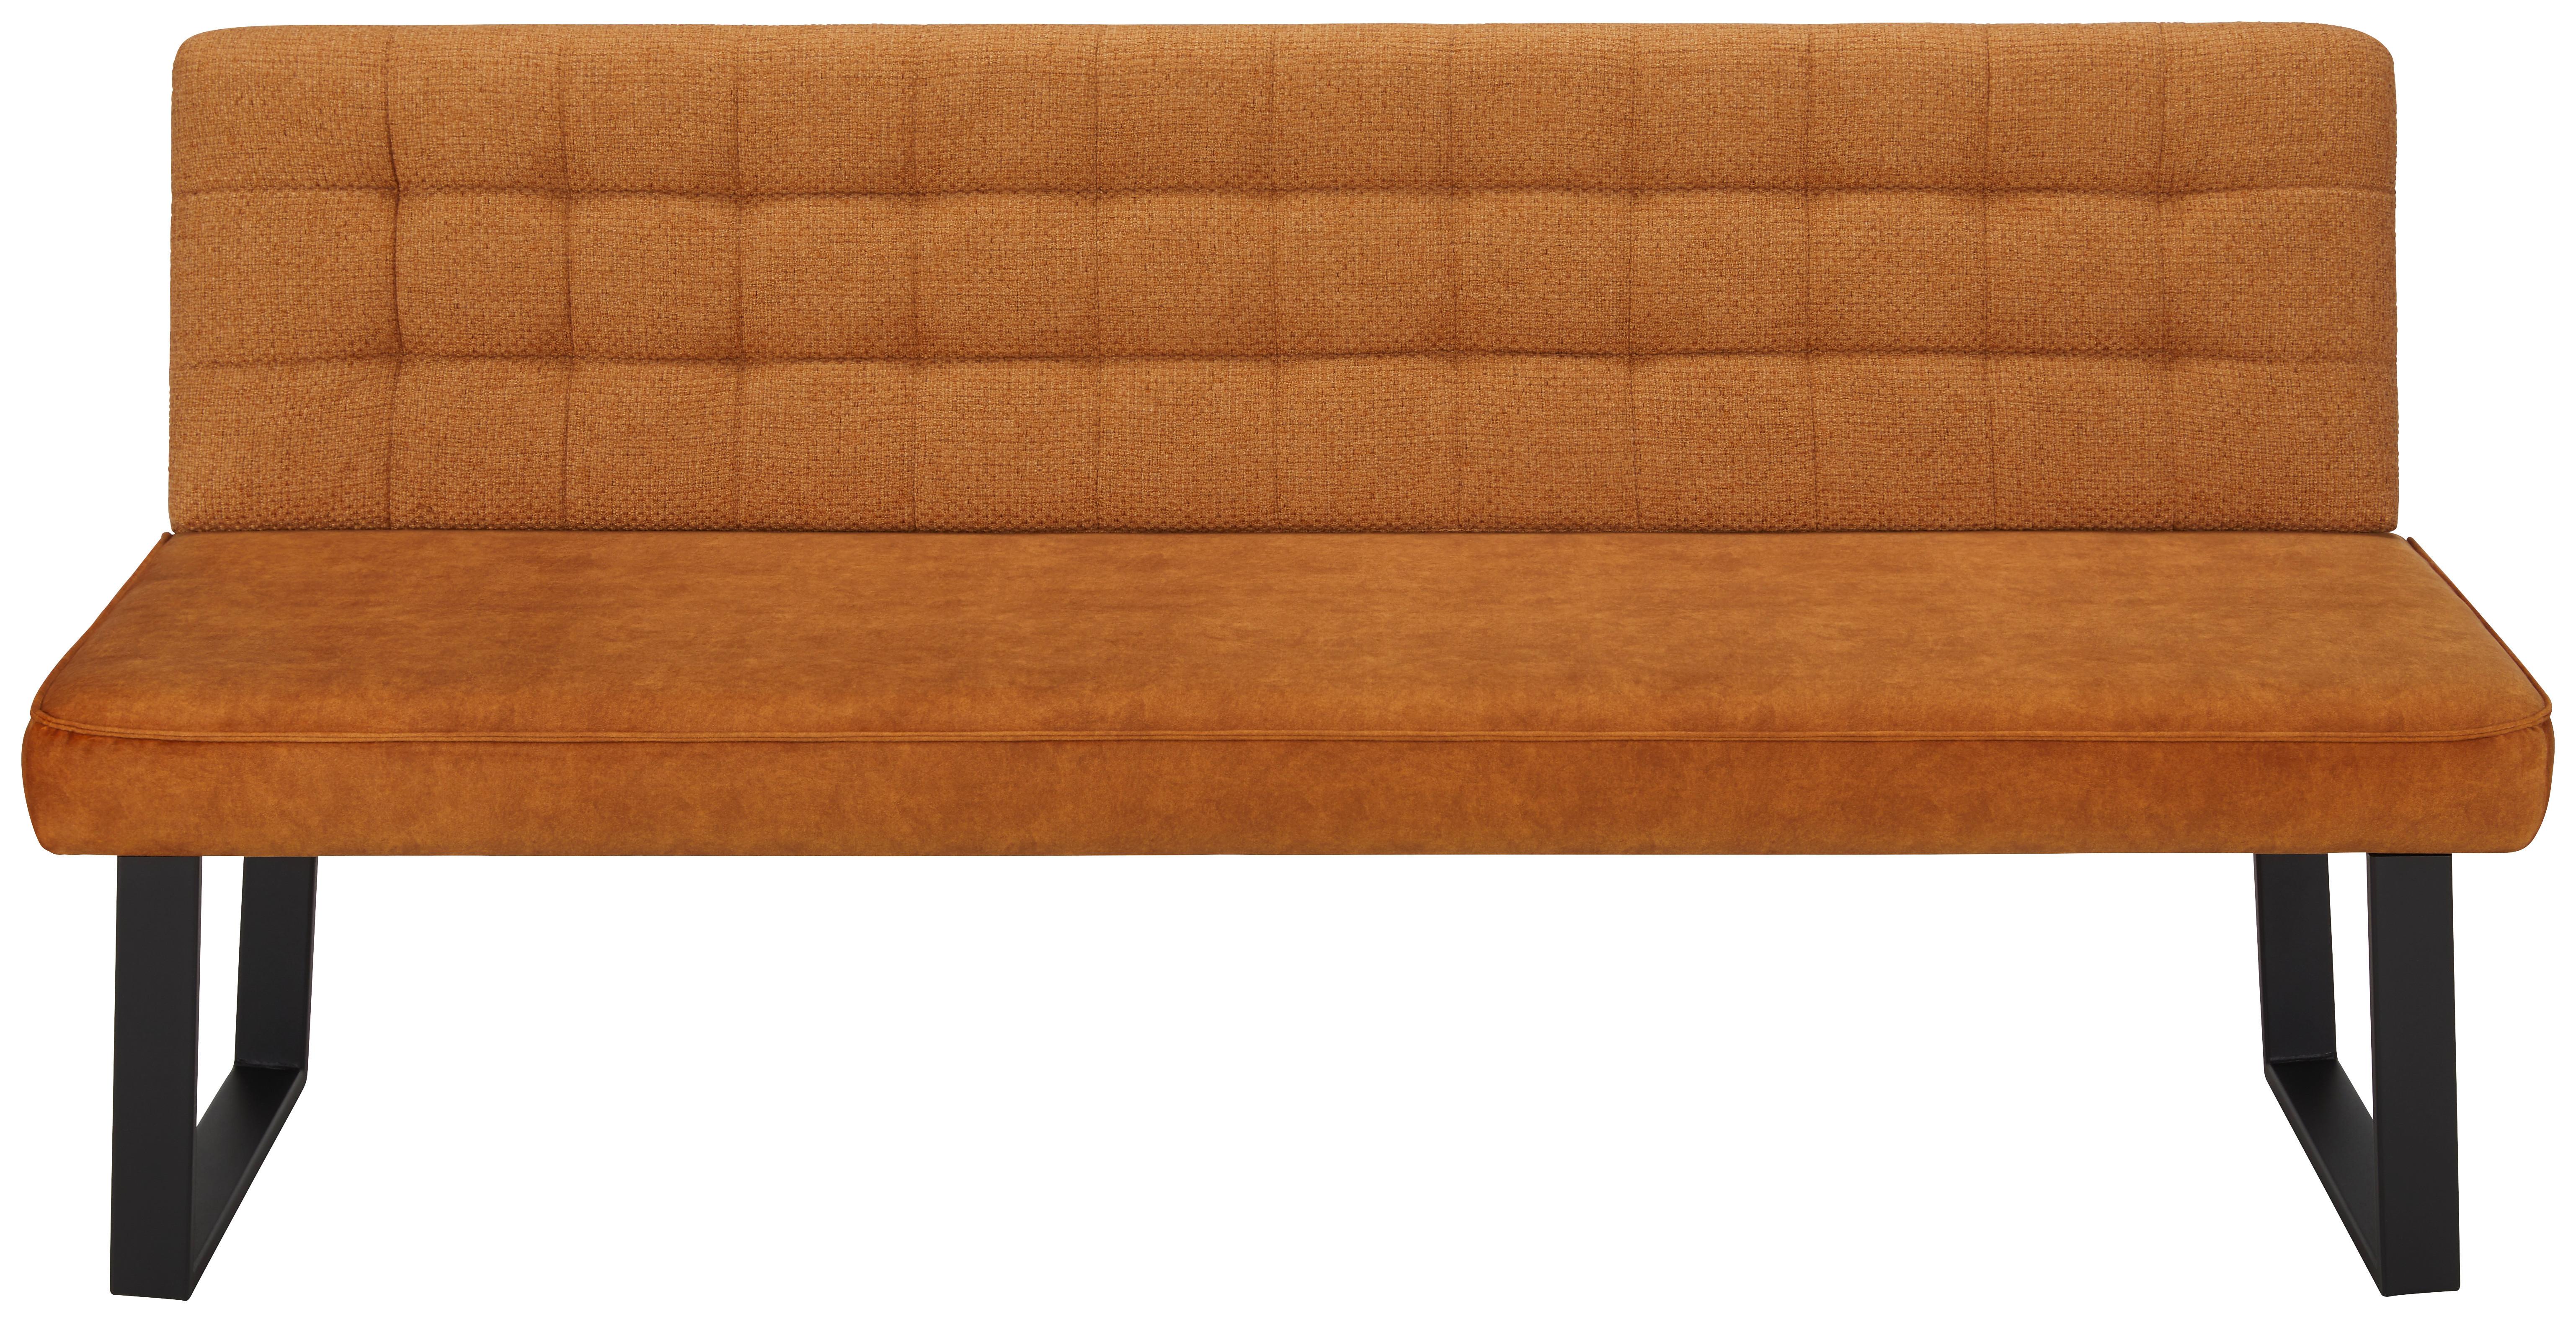 Sitzbank in Orange ca. 180x86x63cm - Schwarz/Orange, MODERN, Textil/Metall (180/86/63cm) - Premium Living